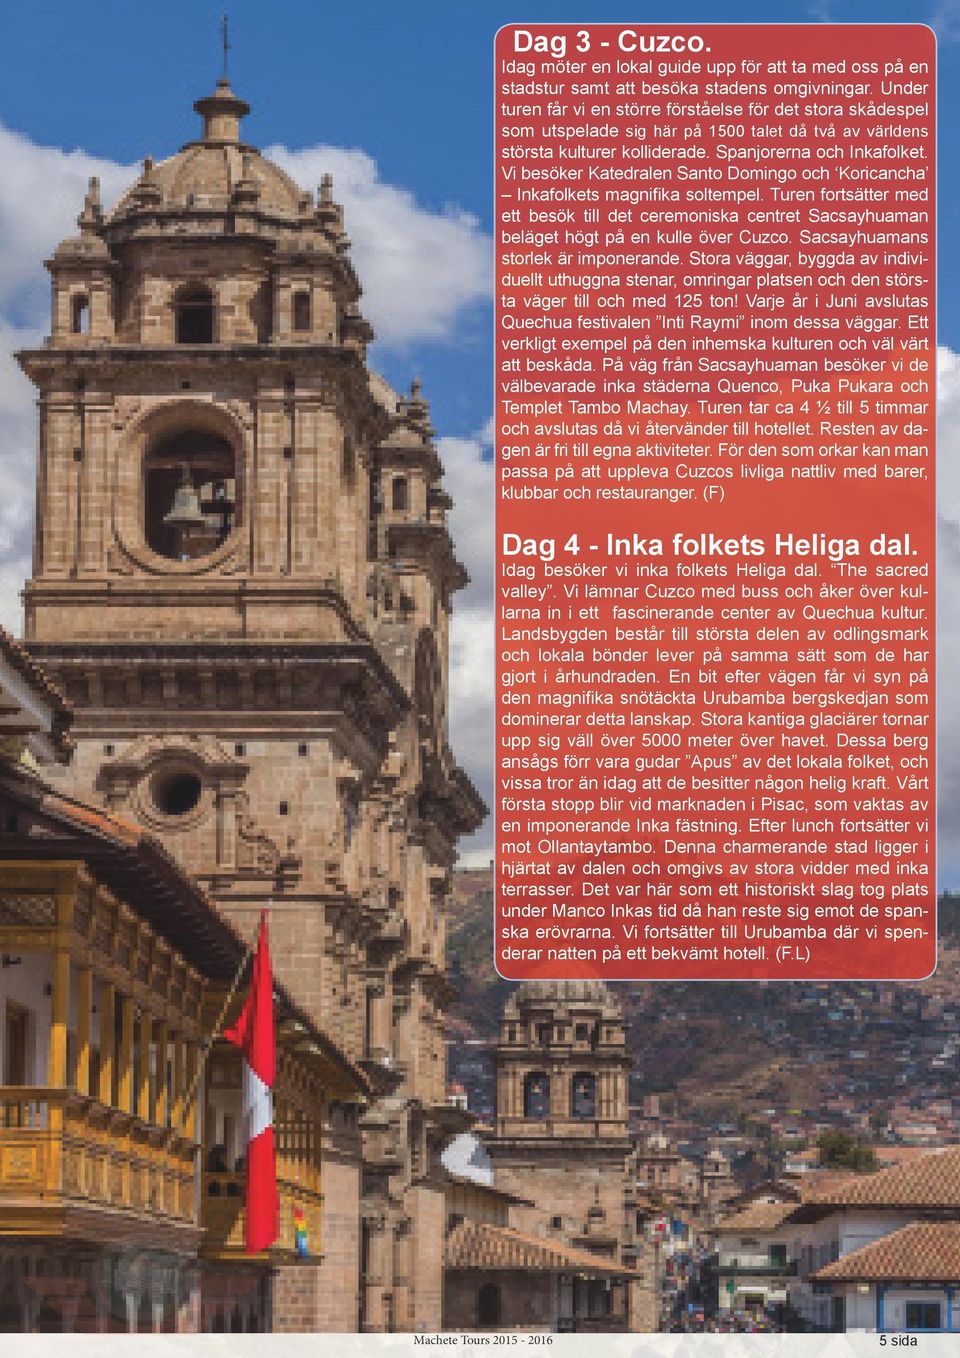 Vi besöker Katedralen Santo Domingo och Koricancha Inkafolkets magnifika soltempel. Turen fortsätter med ett besök till det ceremoniska centret Sacsayhuaman beläget högt på en kulle över Cuzco.